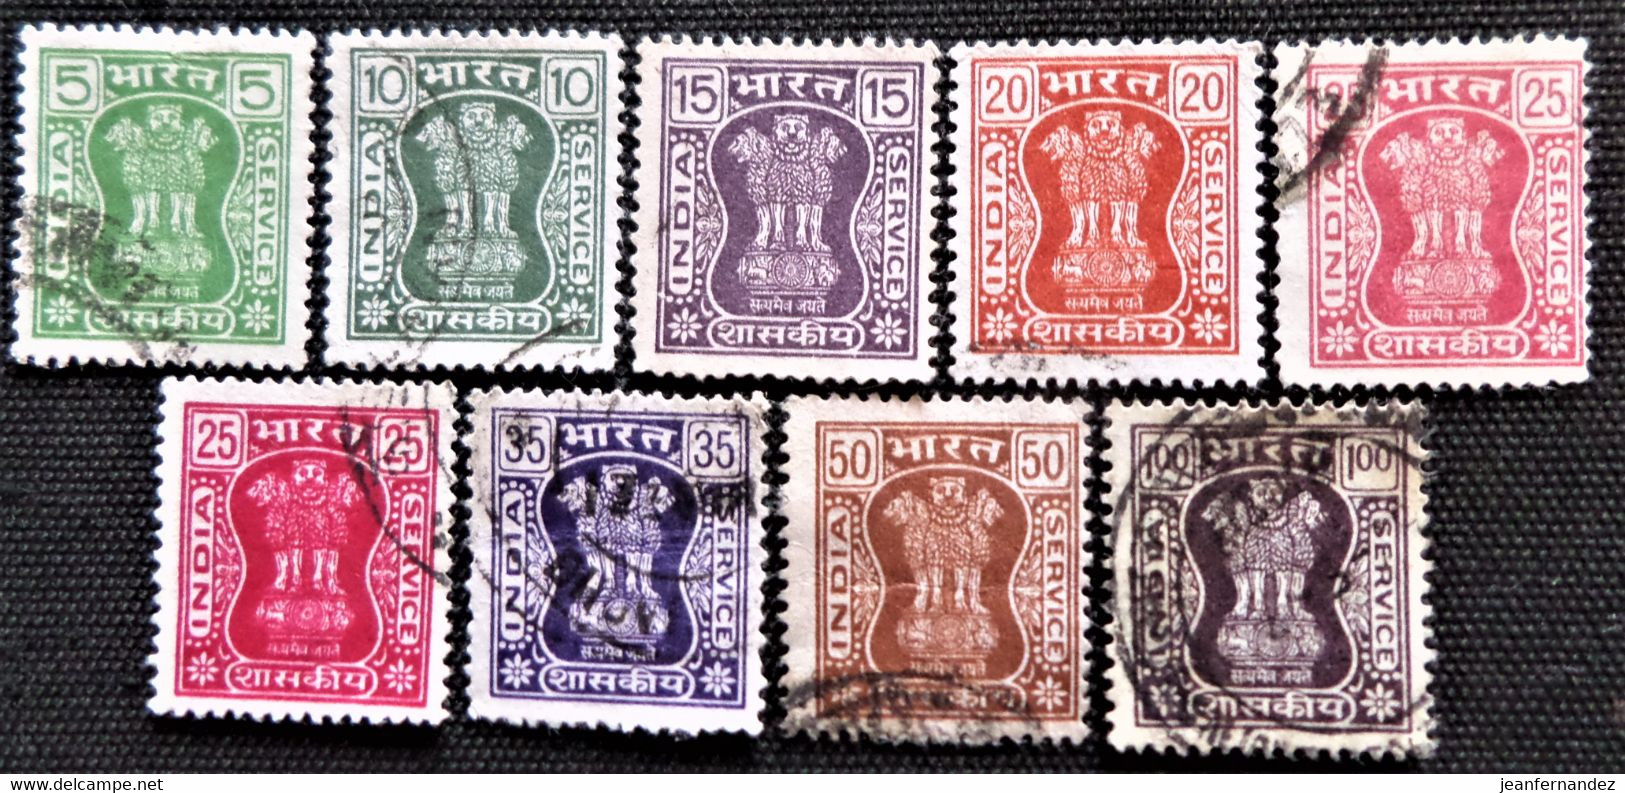 Timbres De Service De L'Inde 1976 -1980 Capital Of Asoka Pillar  Stampworld N°  192 à 196A_198 à 200 - Timbres De Service